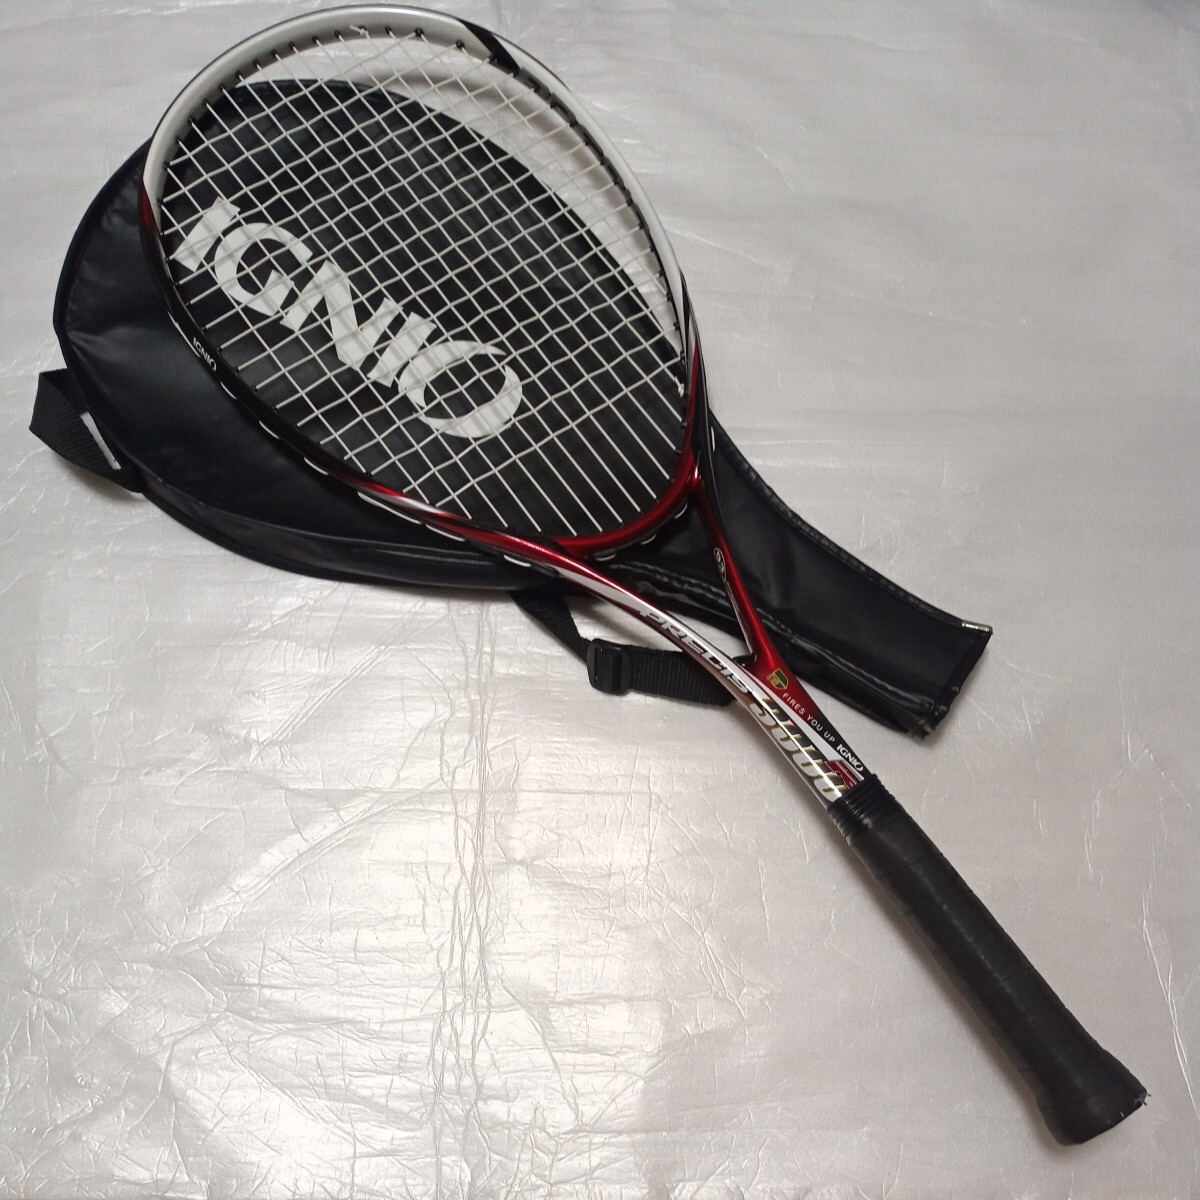 送料無料 IGNIO ソフトテニスラケット PRECIS3000 入門用 ソフトテニス ラケット イグニオ ラケット の画像1